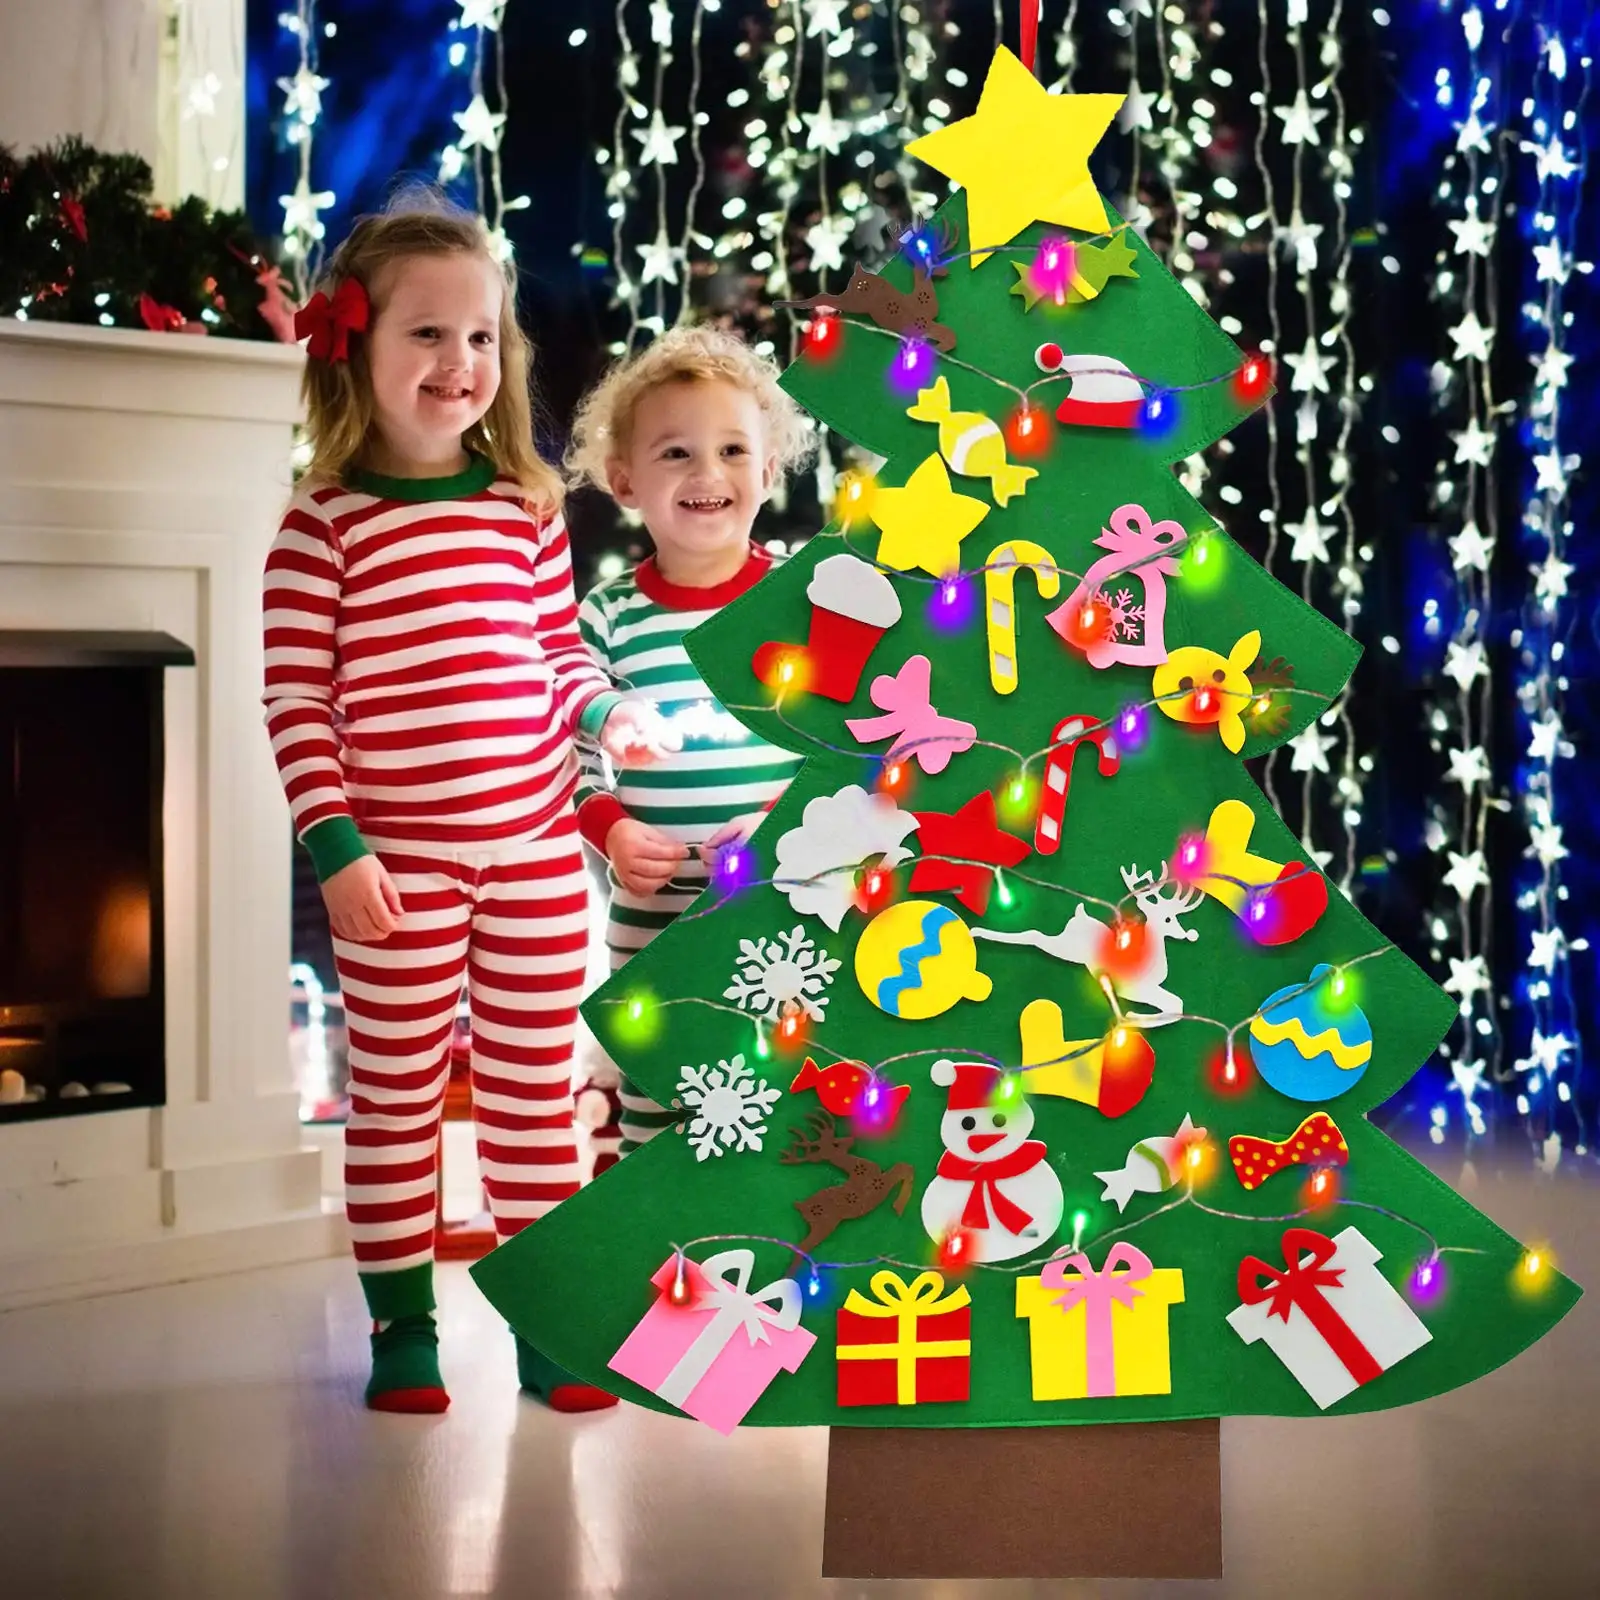 Baby Montessori játék 32db DIY filc karácsonyfa kisgyermekek elfoglalt tábla Karácsonyfa ajándék fiúnak lány ajtó fali dísz dekorációk